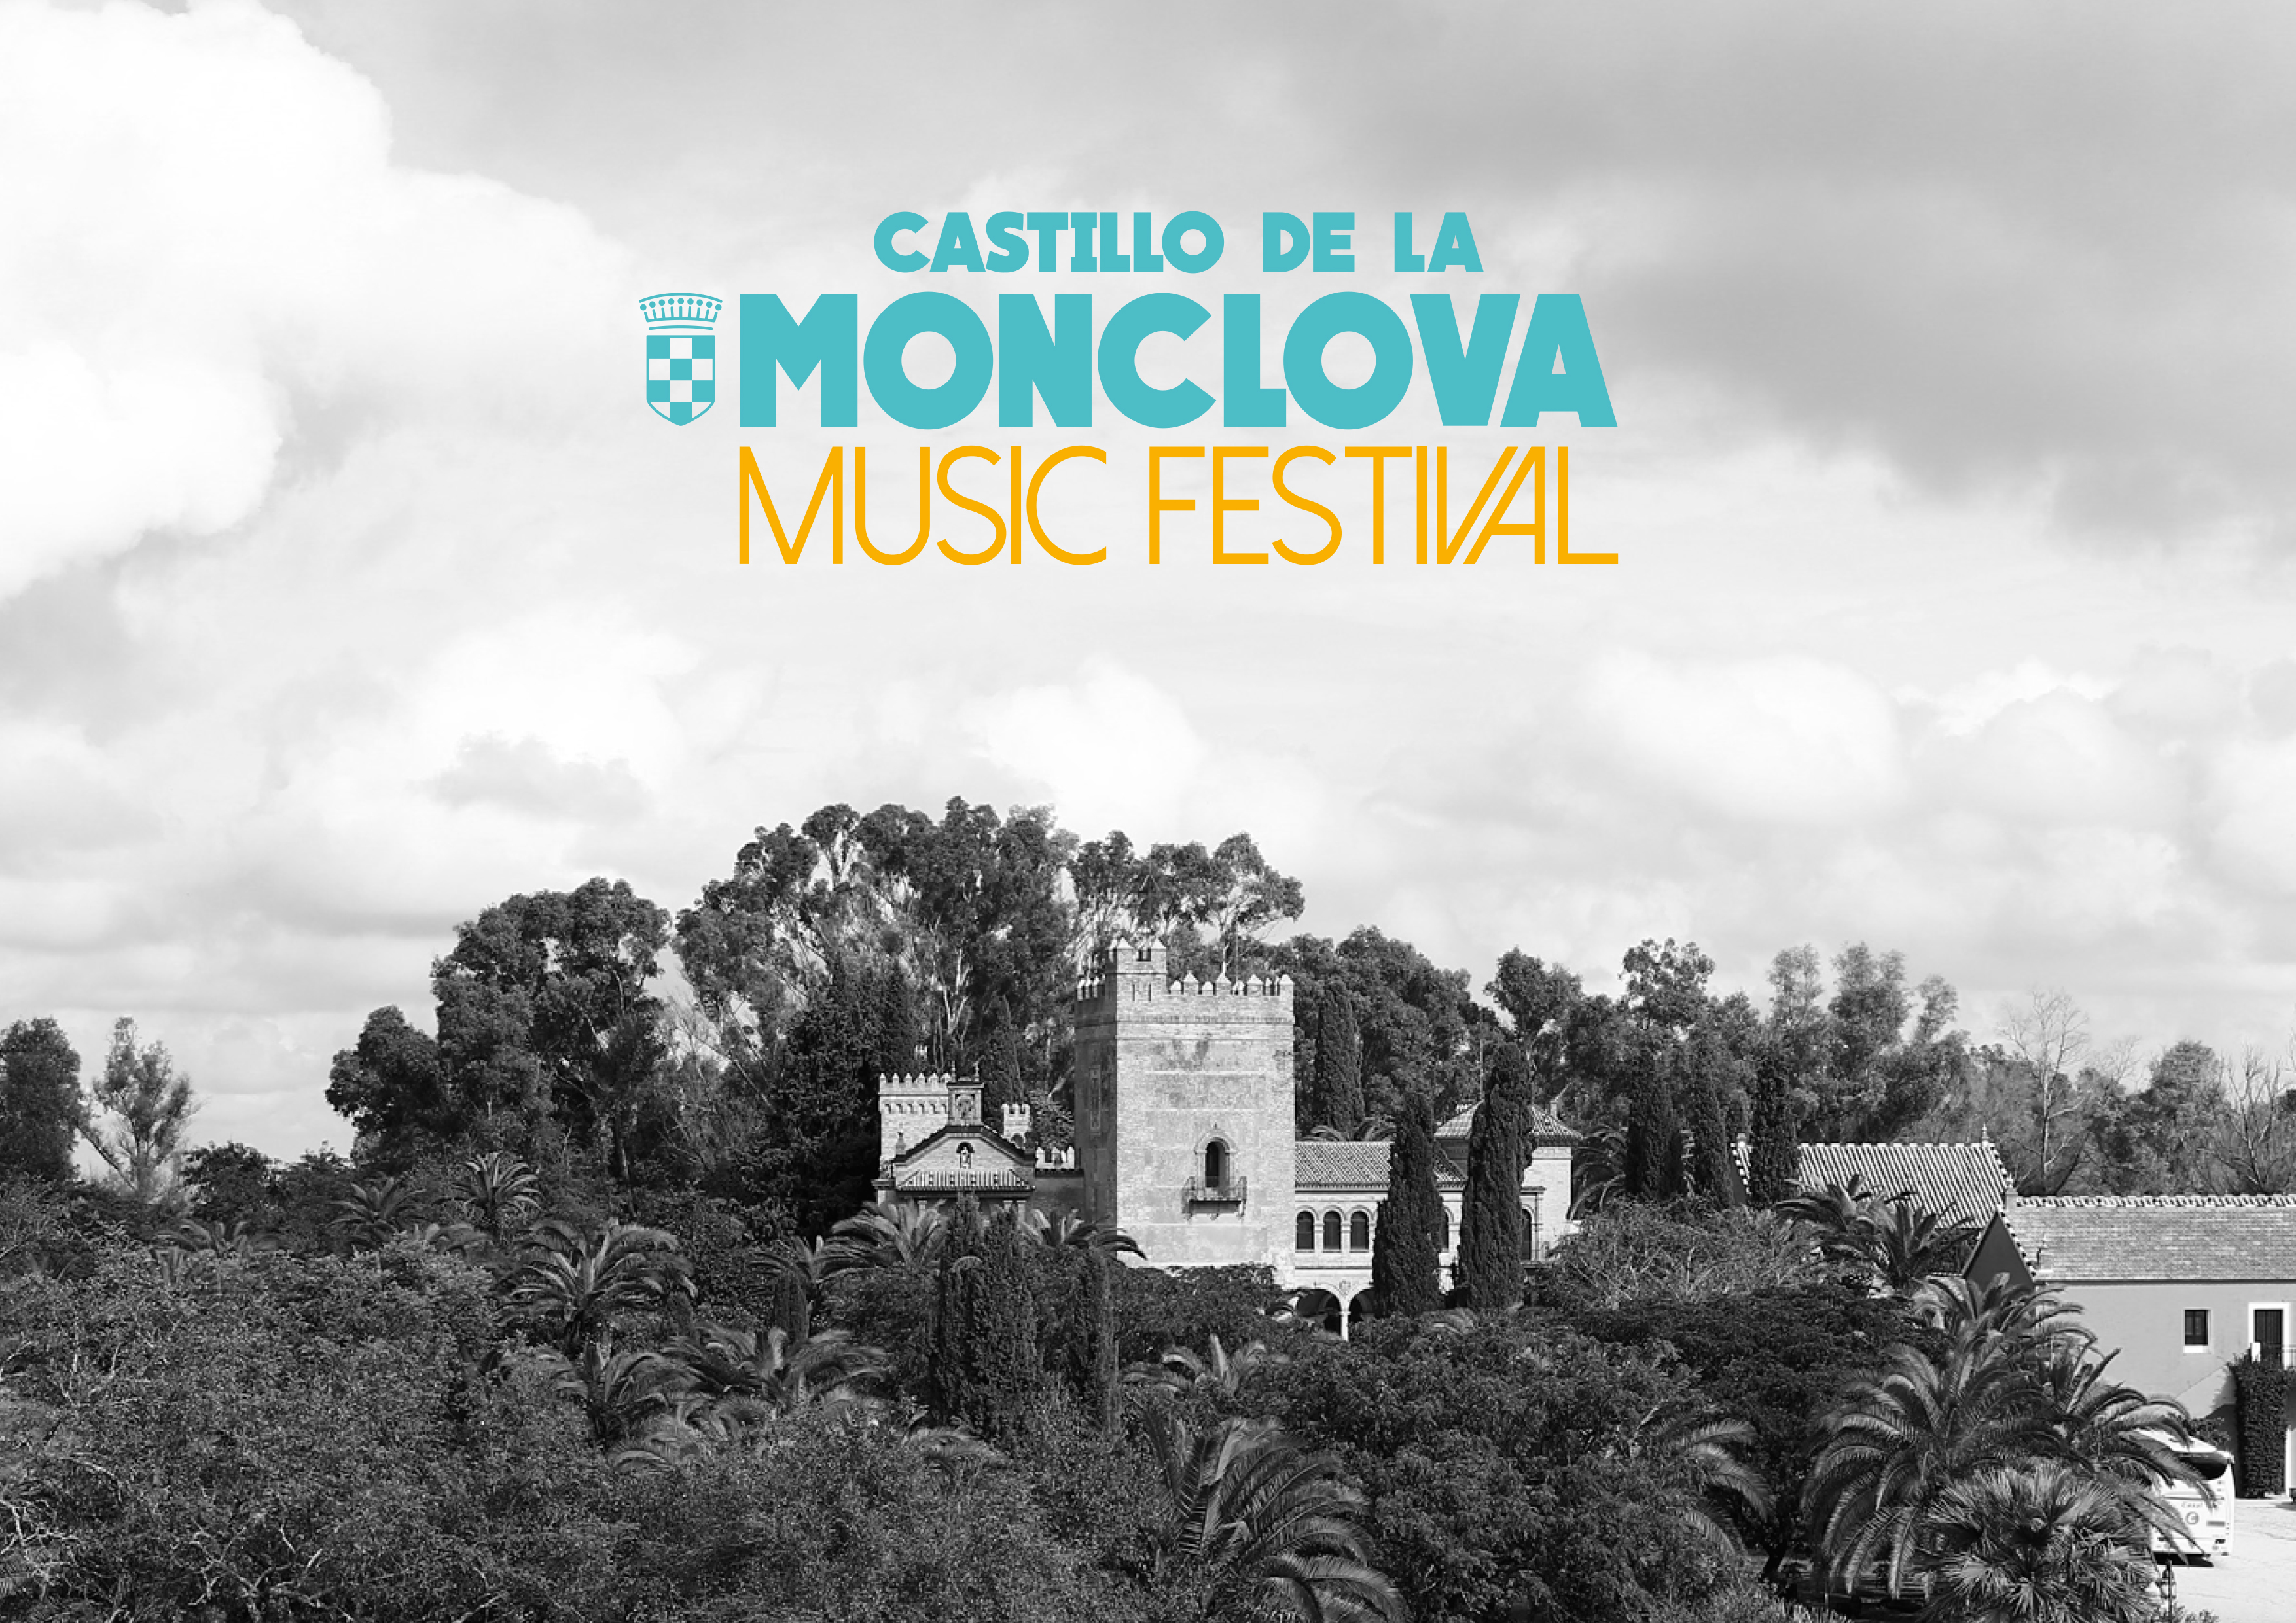 Castillo de la Monclova Music Festival